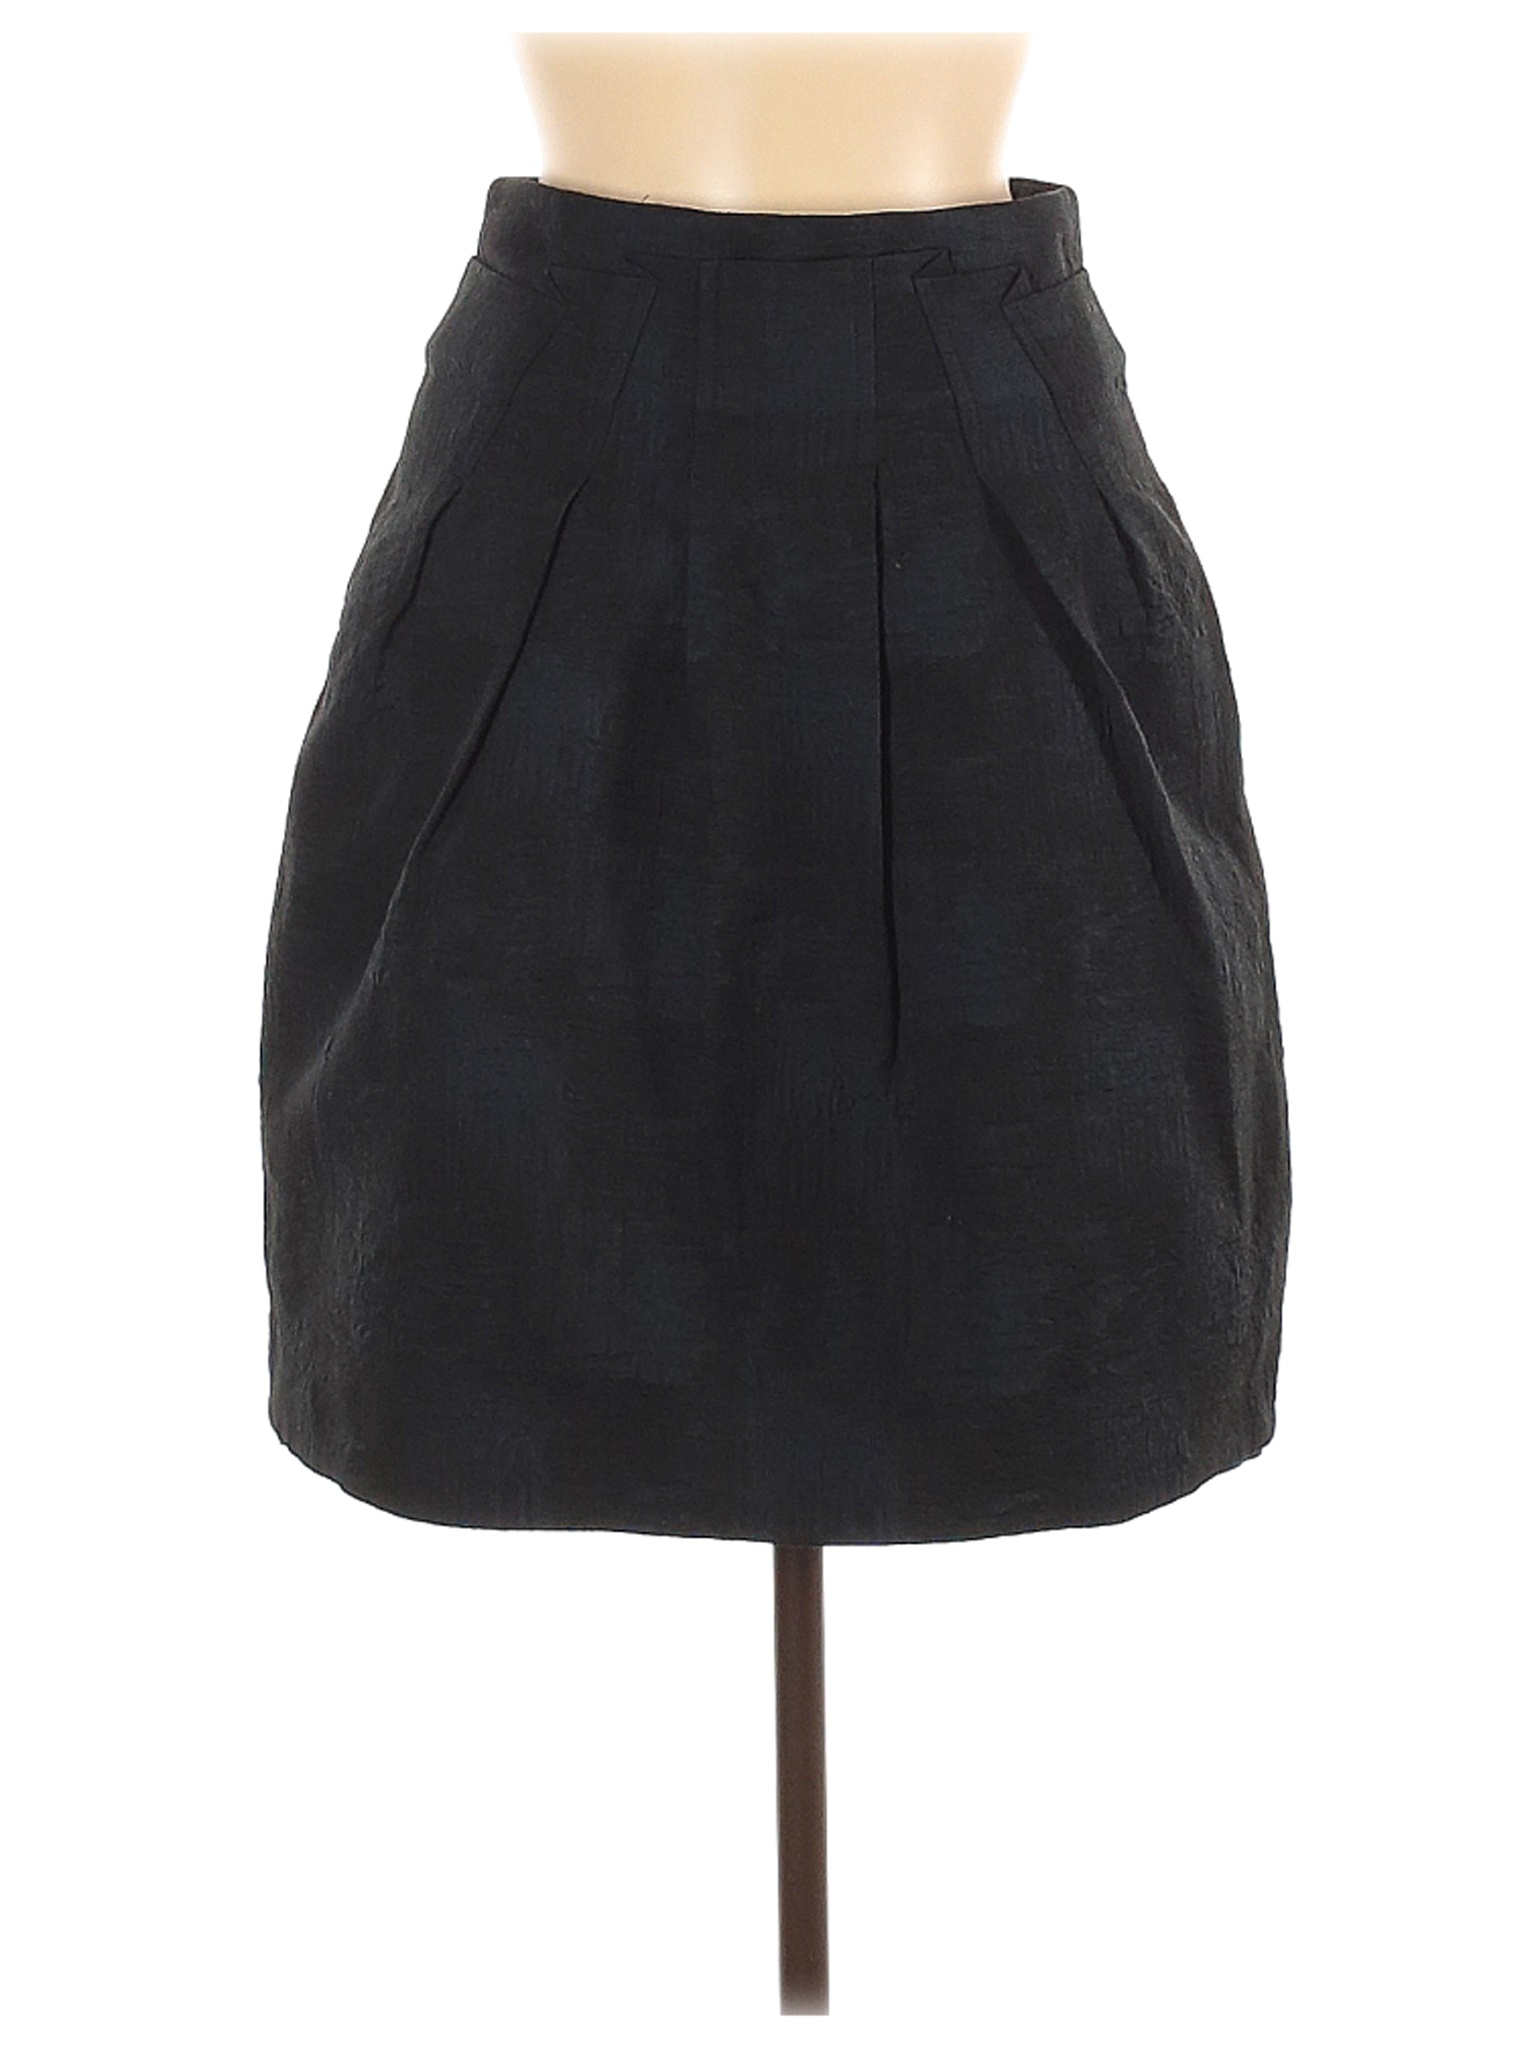 Veronika Maine Women Black Casual Skirt 8 | eBay